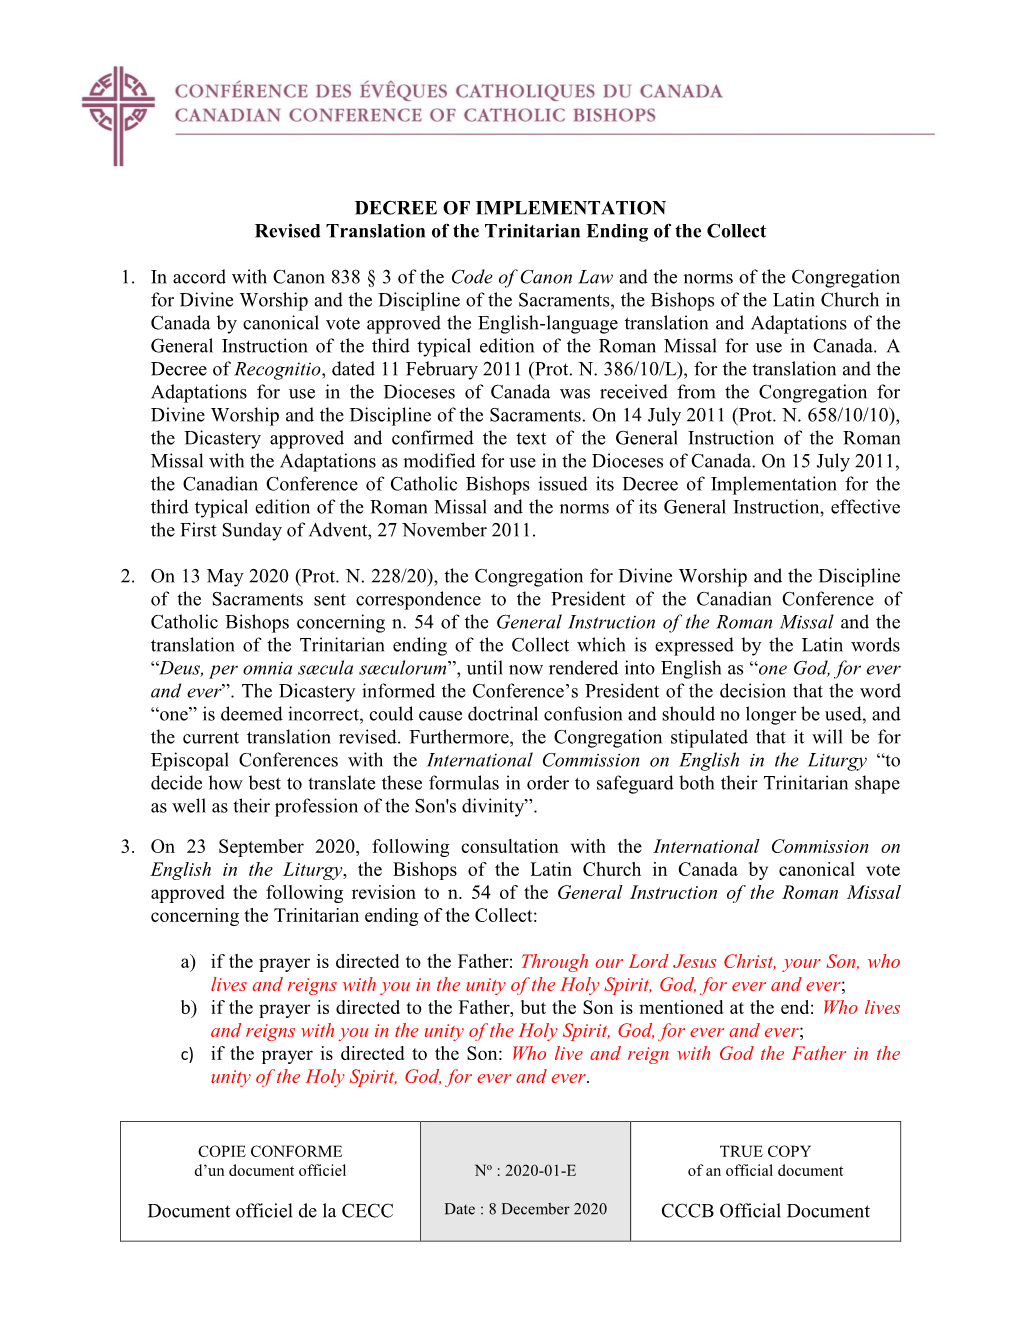 Document Officiel De La CECC CCCB Official Document DECREE OF